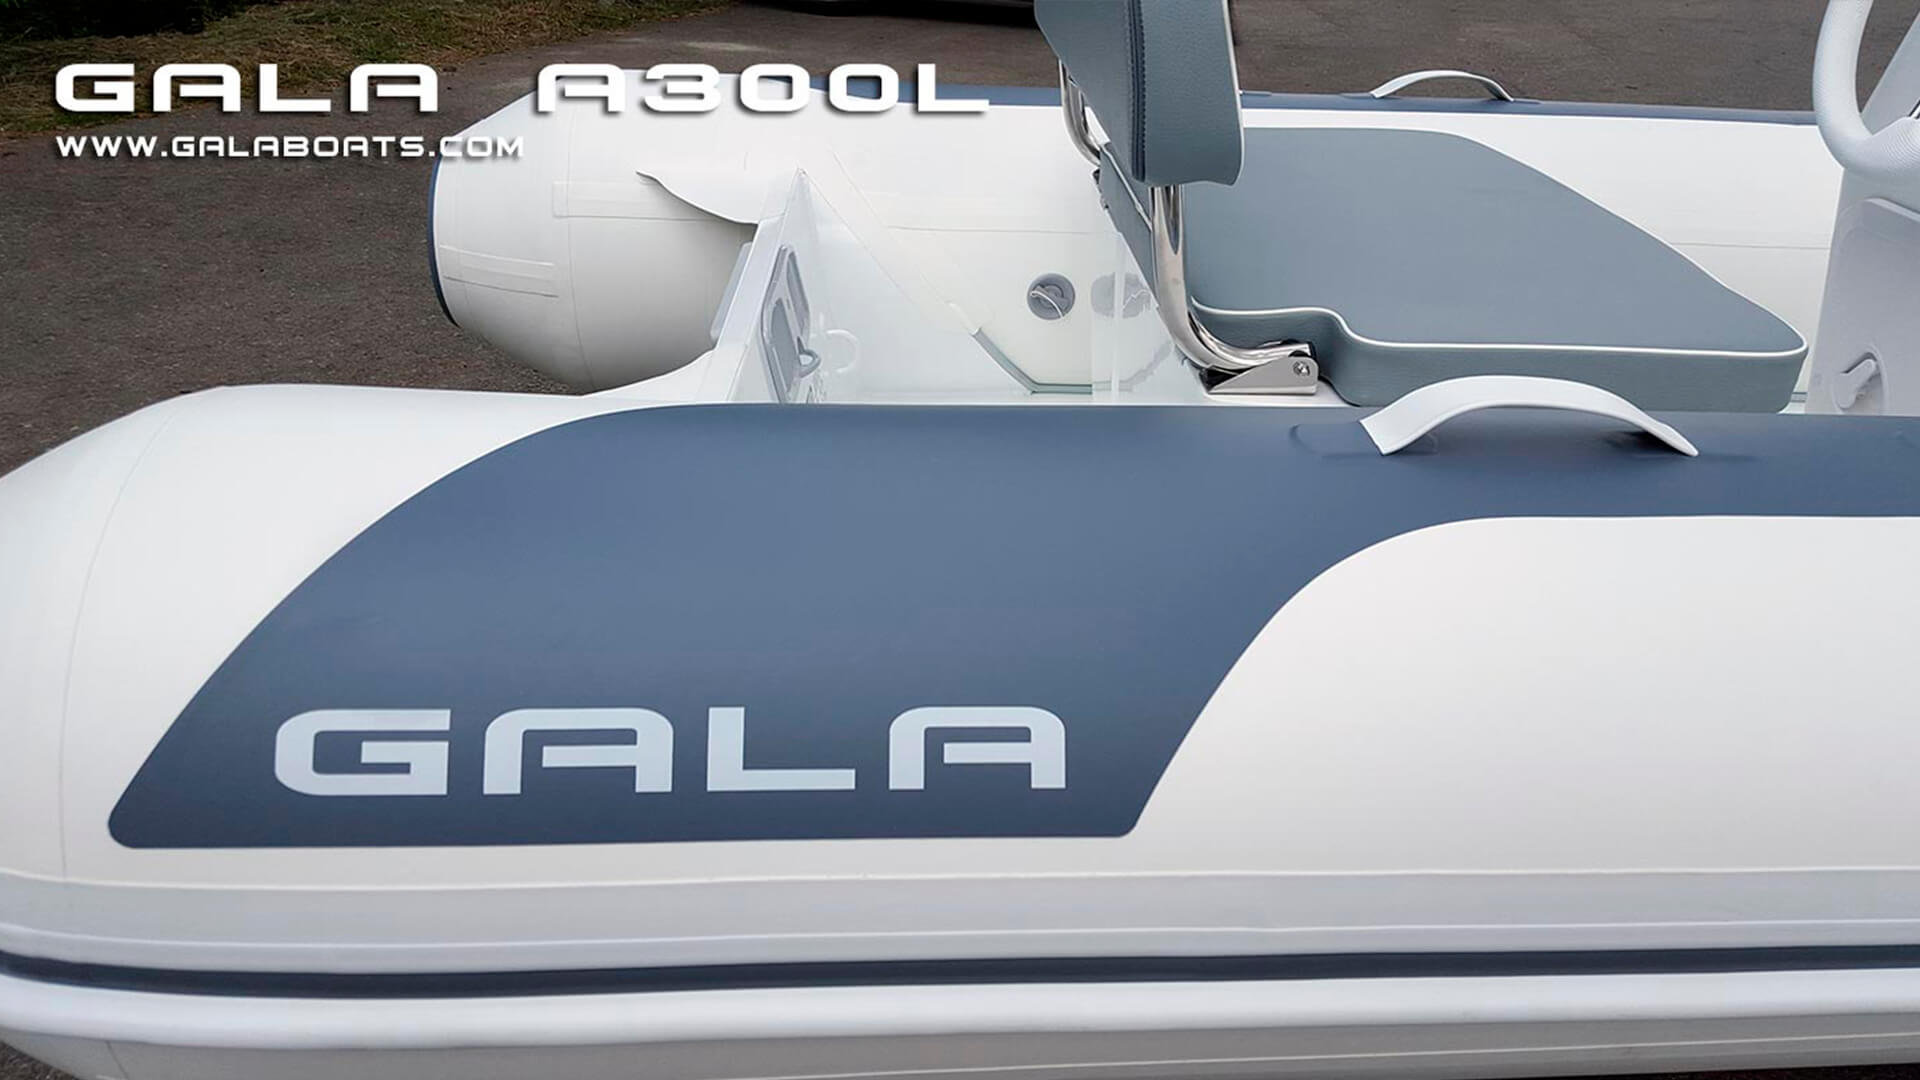 Надувная лодка с жестким алюминиевым дном GALA Atlantis A300L, Надувная лодка с жестким дном GALA Atlantis A300L, Надувная лодка с жестким дном GALA A300L, Надувная лодка GALA A300L, Надувная лодка GALA A300L, GALA A300L, лодка с жестким дном, алюминиевый риб, алюминиевый RIB, RIB, тендерная лодка, тендер для яхты